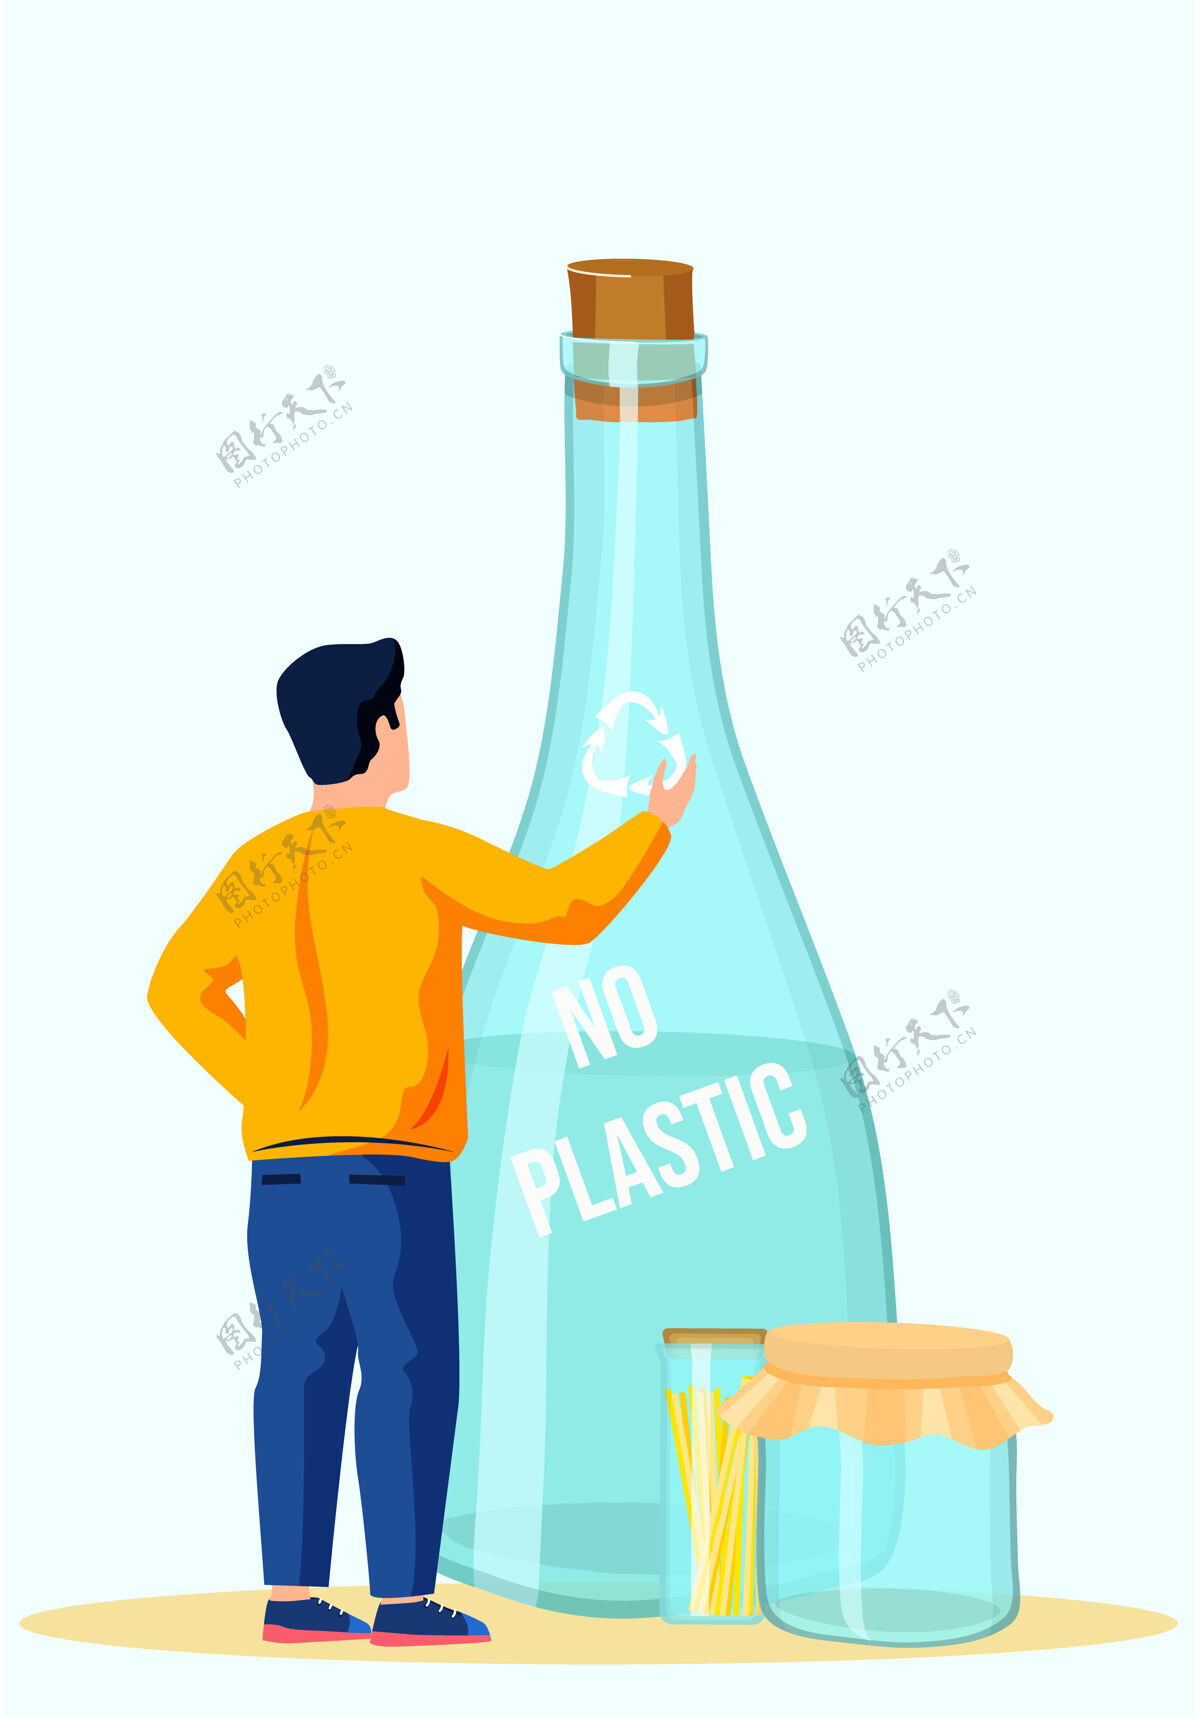 玻璃玻璃瓶装水 上面写着用木塞封上的字样瓶子再利用容器